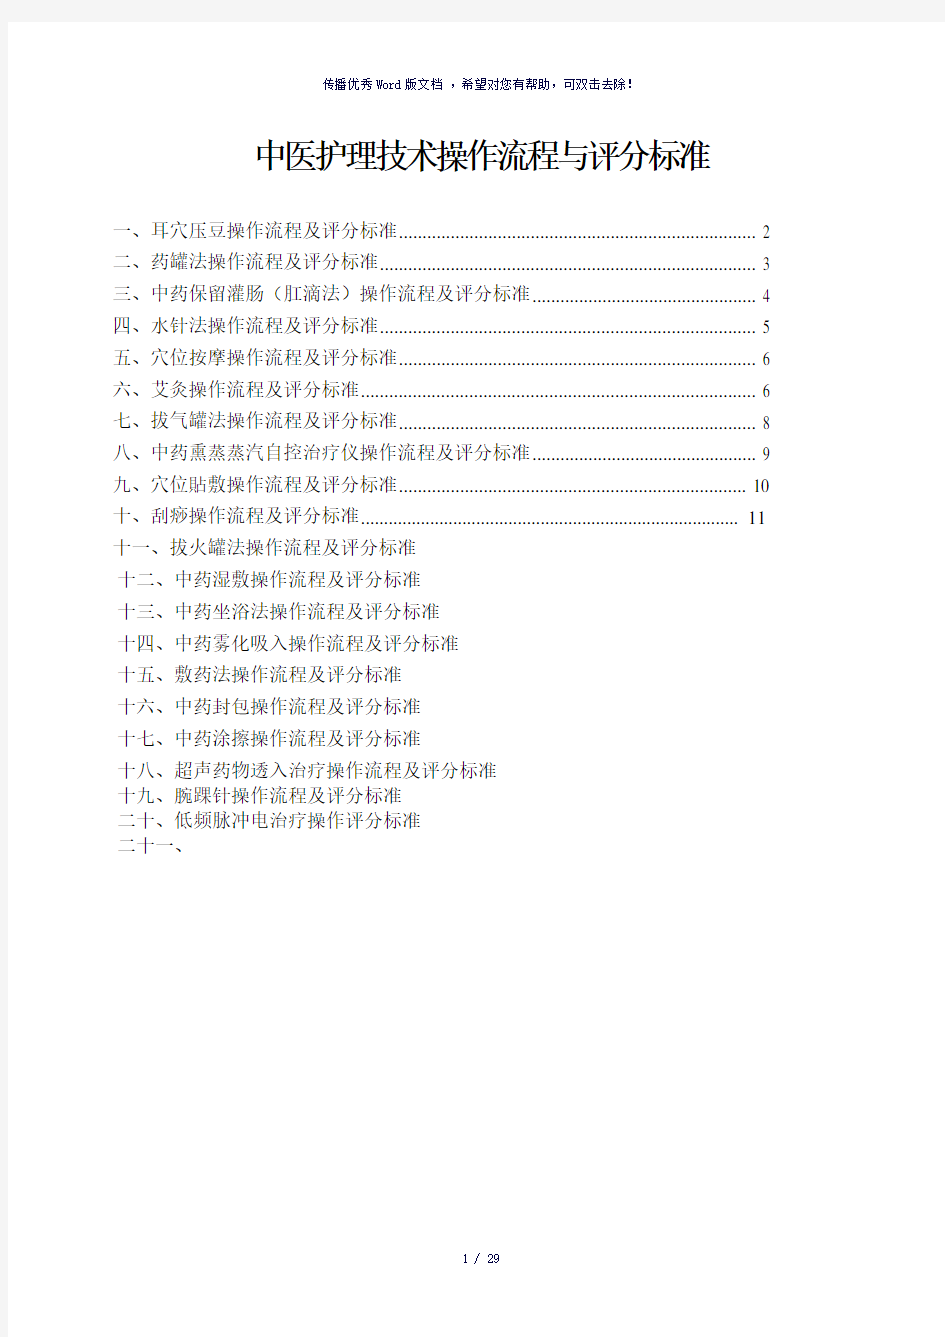 中医护理技术操作流程与评分标准(参考模板)